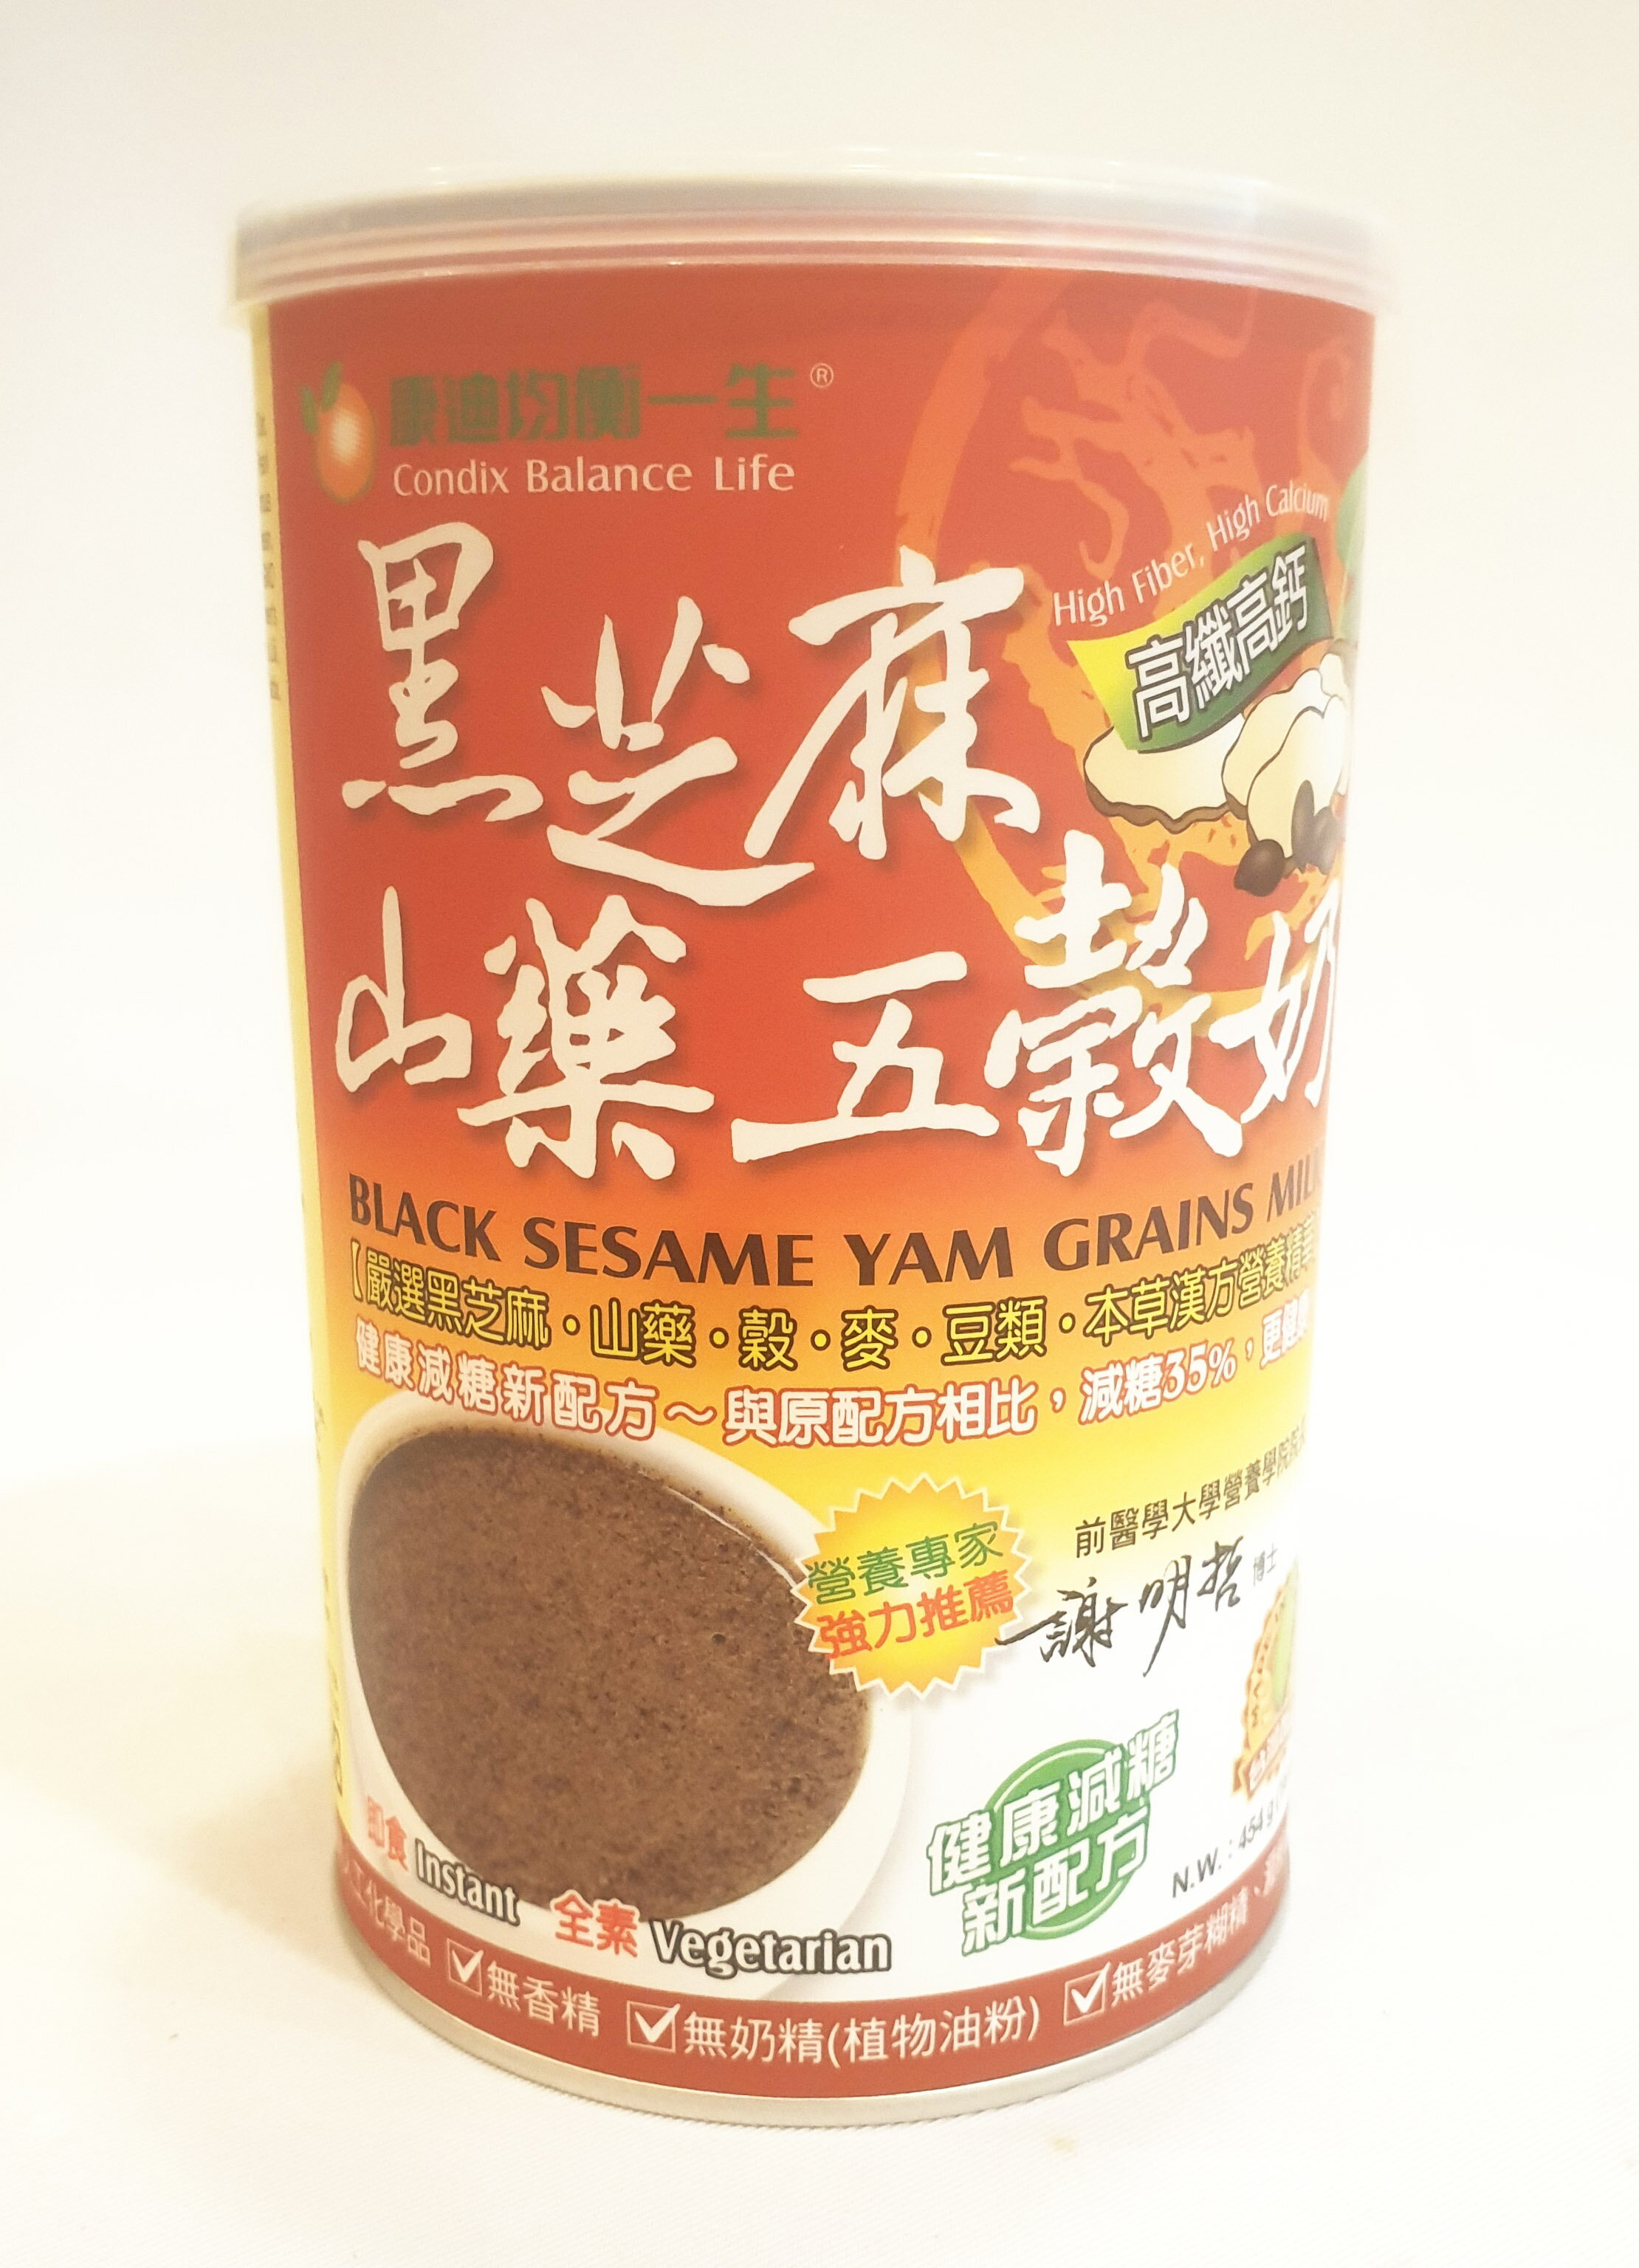 康迪均衡一生 黑芝麻山藥五穀奶 454克/罐 (台灣製造)